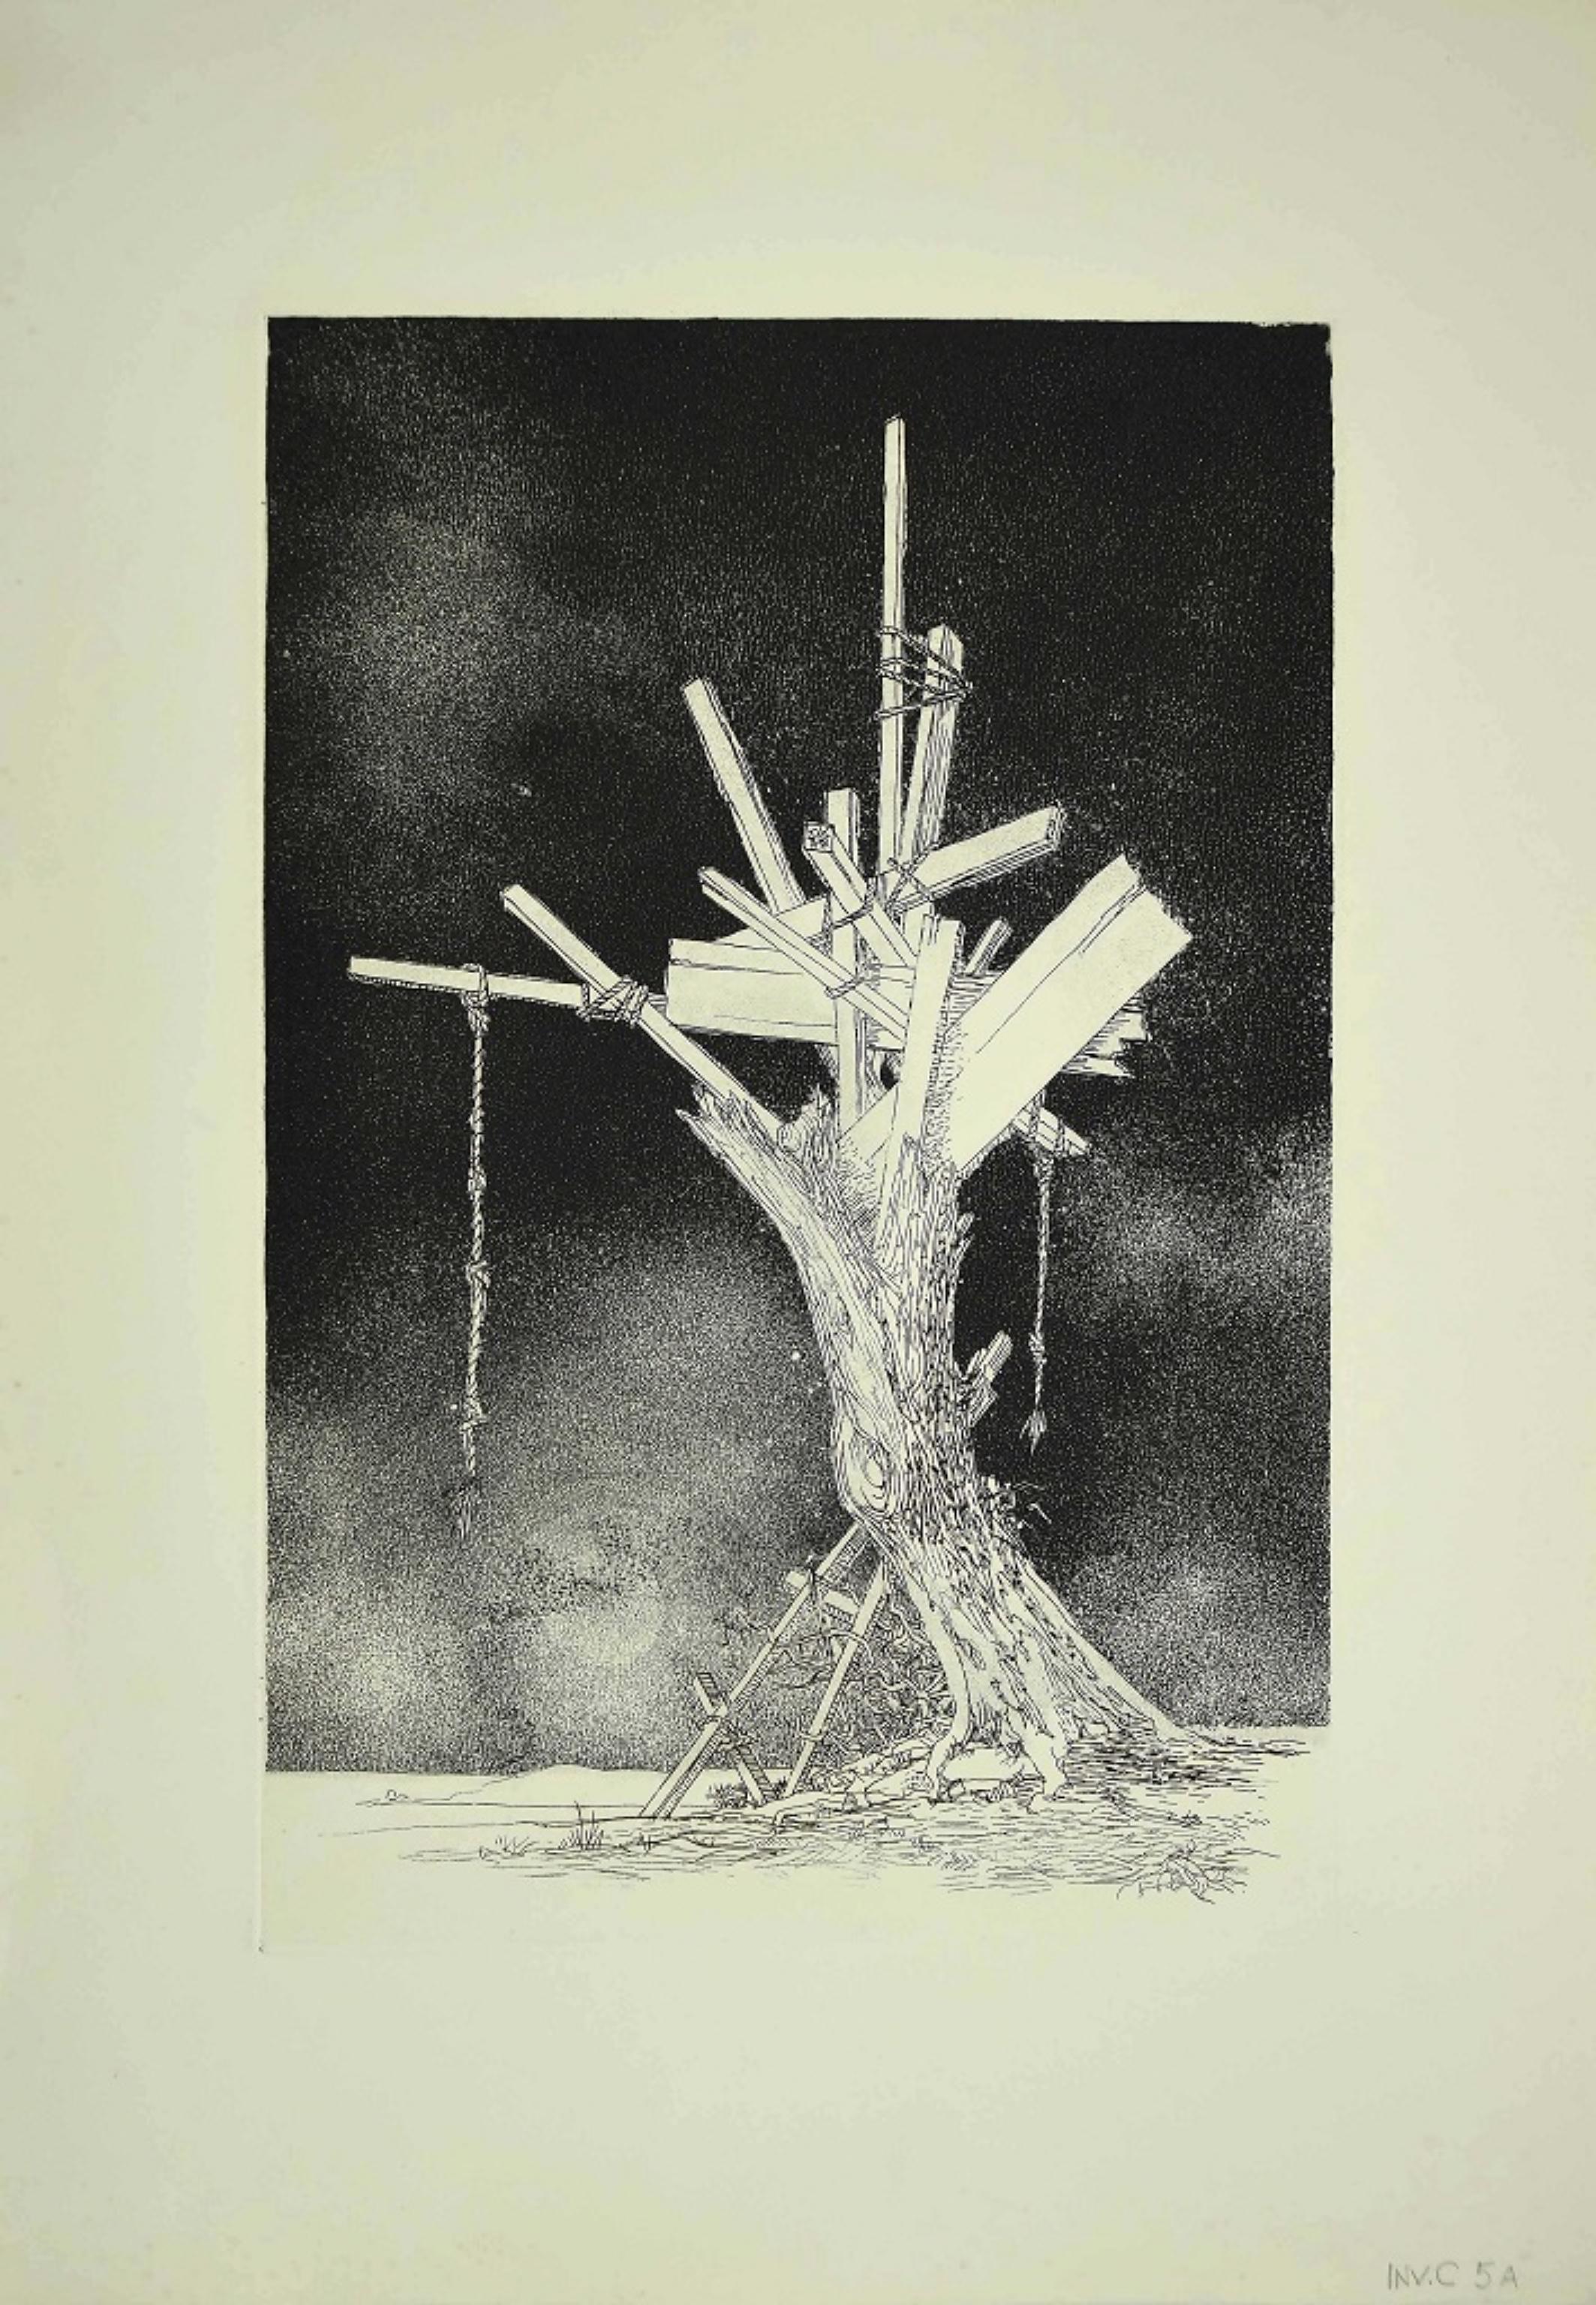 Tree of Life ist ein zeitgenössisches Kunstwerk, das der italienische Künstler Leo Guida in den 1970er Jahren geschaffen hat.

Original-Radierung auf Papier. 

Neuwertiger Zustand. 

Leo Guida. Mit seinem Gespür für aktuelle Themen, künstlerische